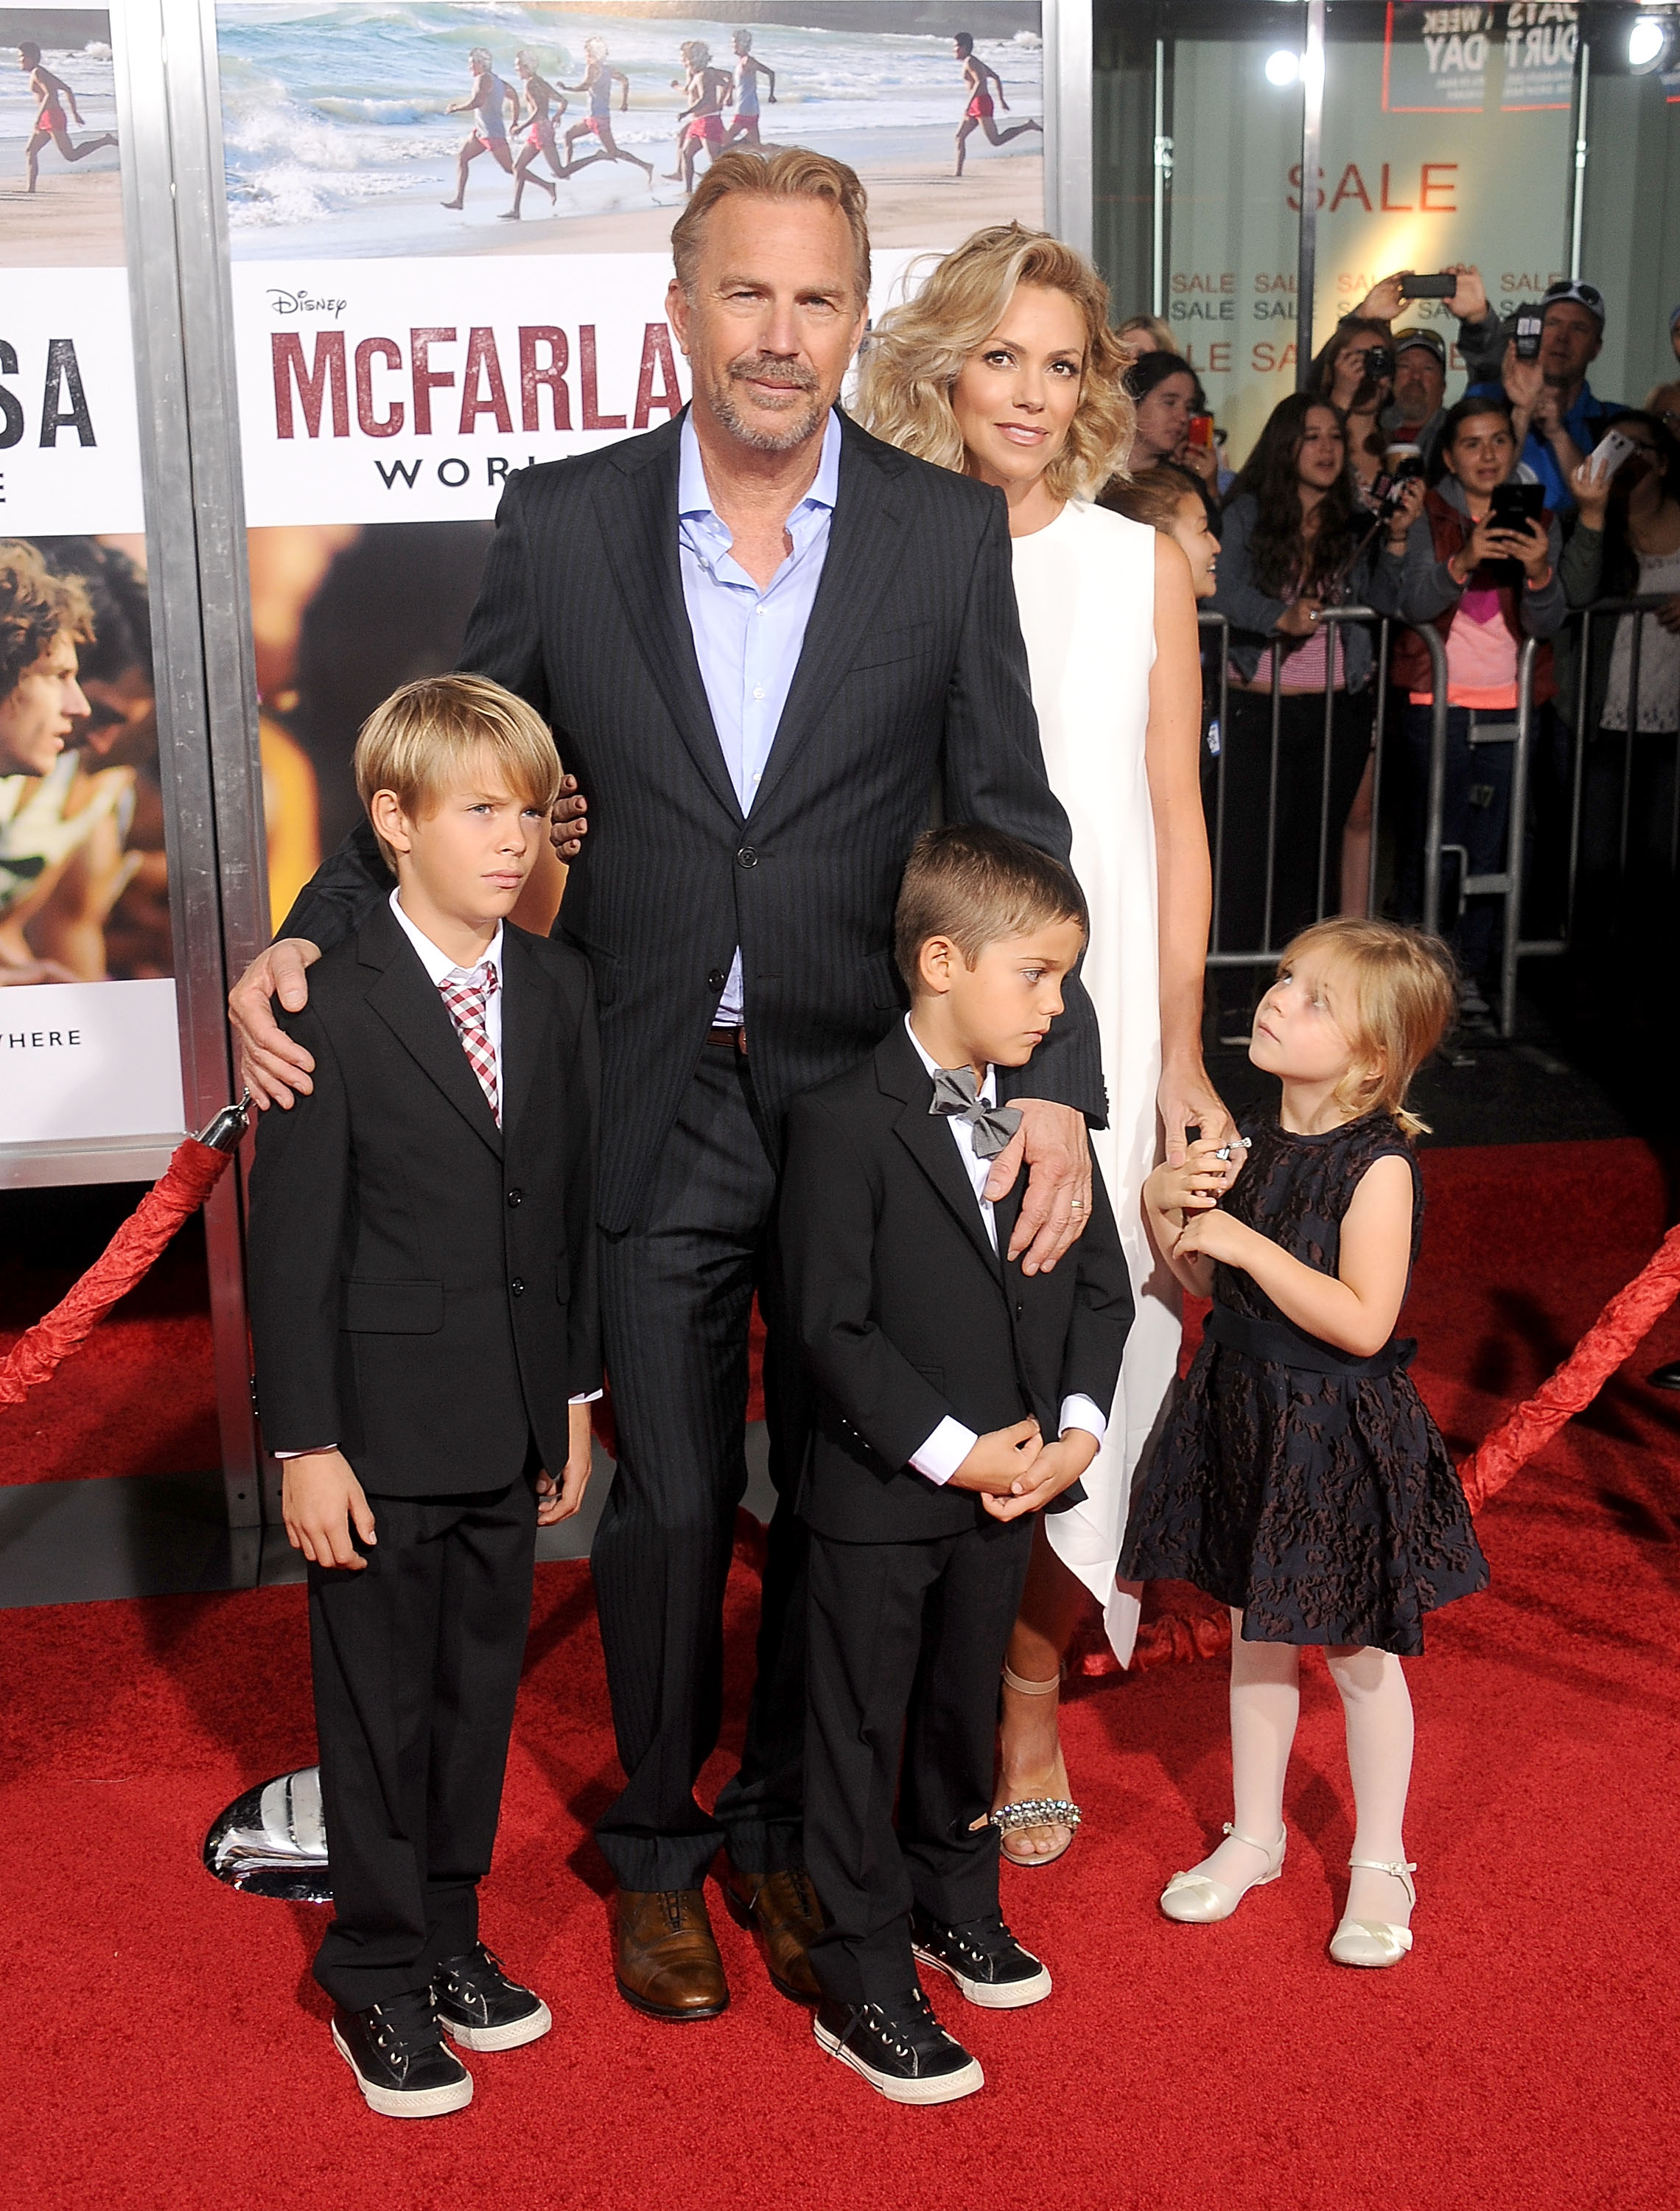 Kevin Costner con Christine Baumgartner y sus hijos Grace Avery, Hayes Logan y Cayden Wyatt Costner en el estreno de "McFarland, USA" el 9 de febrero de 2015 en Hollywood, California | Fuente: Getty Images